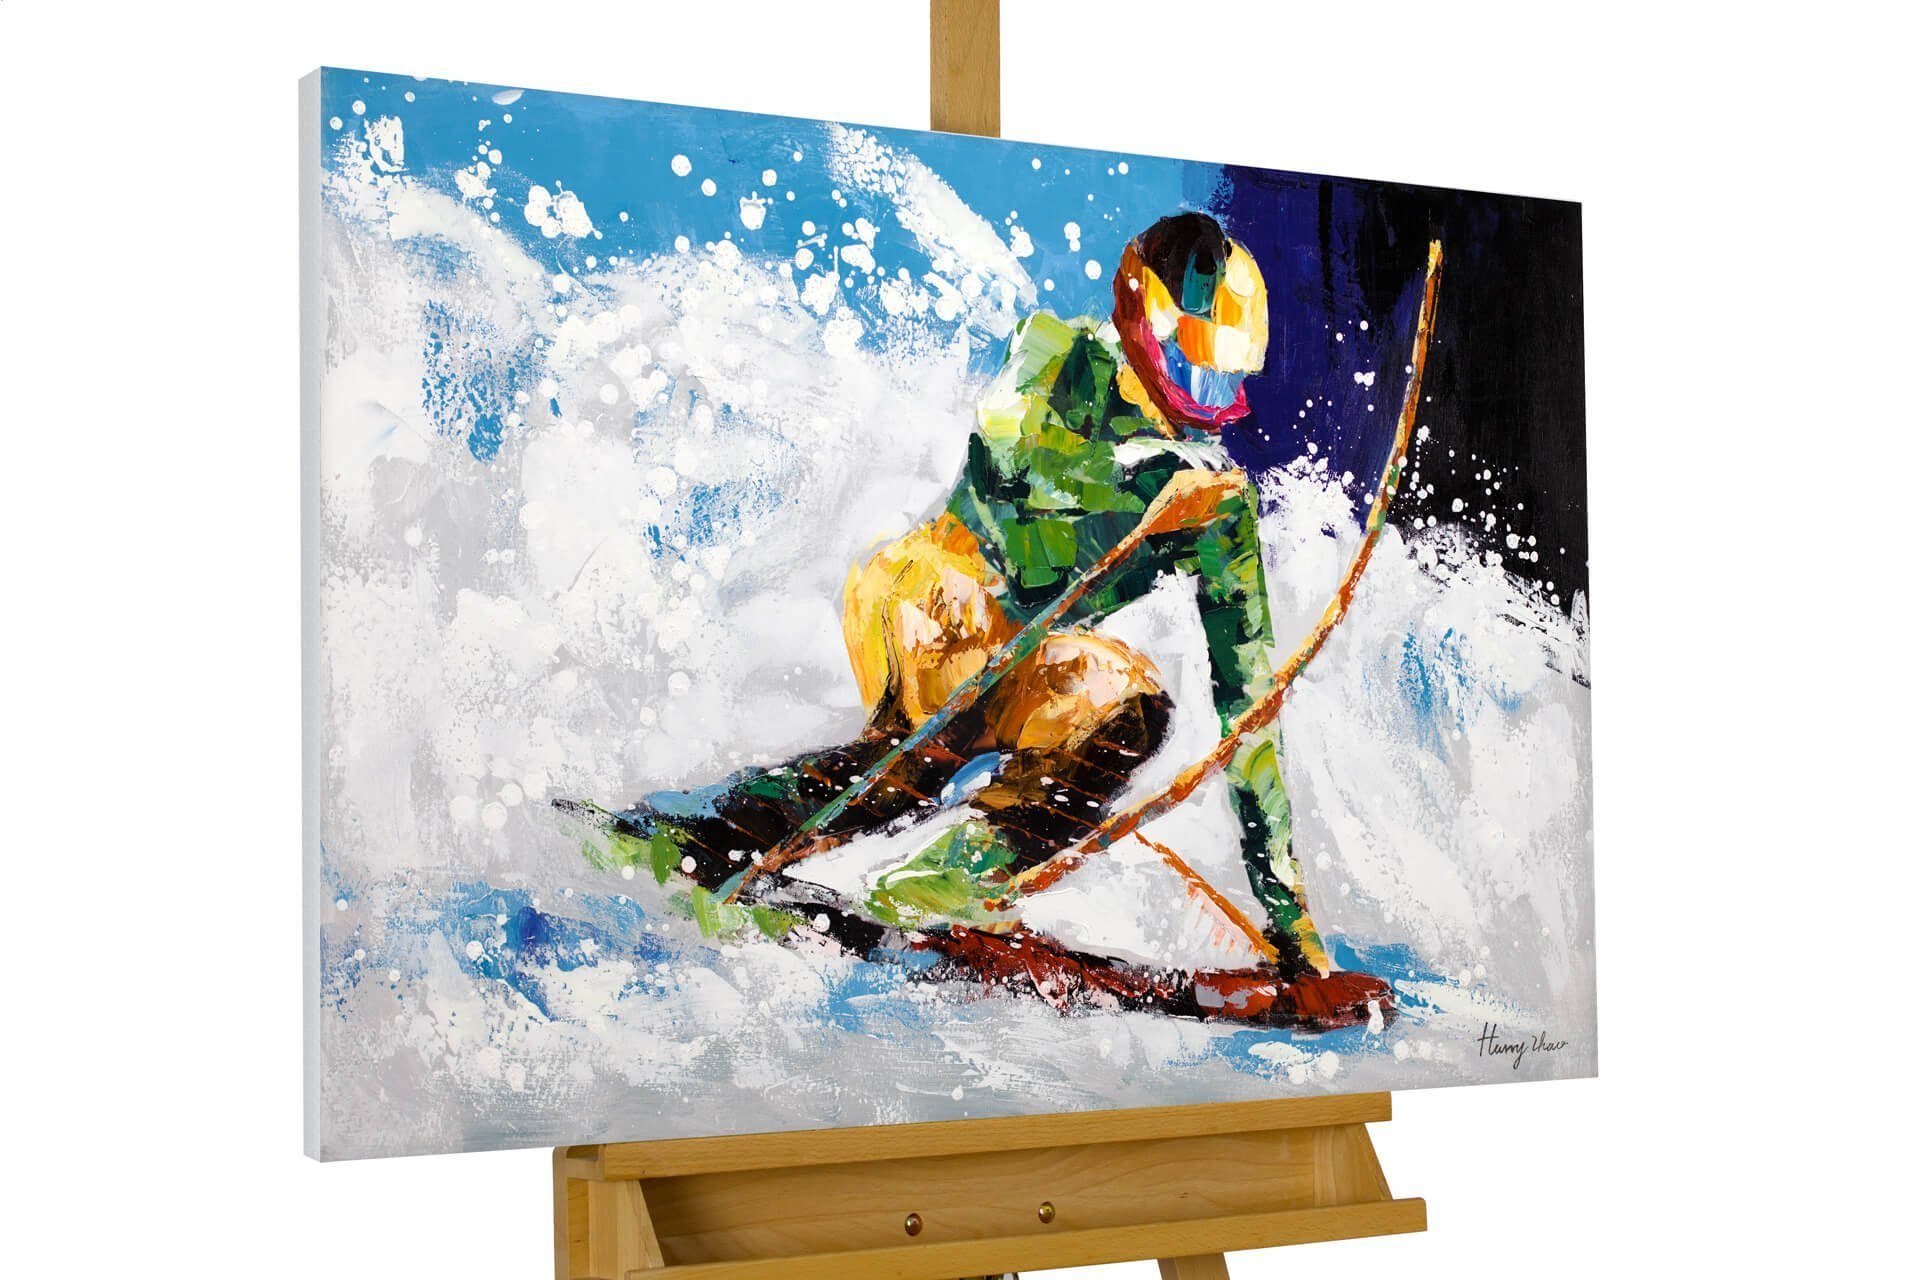 Ride cm, Wohnzimmer in 100% Snow Wandbild the HANDGEMALT KUNSTLOFT Gemälde Leinwandbild 90x60